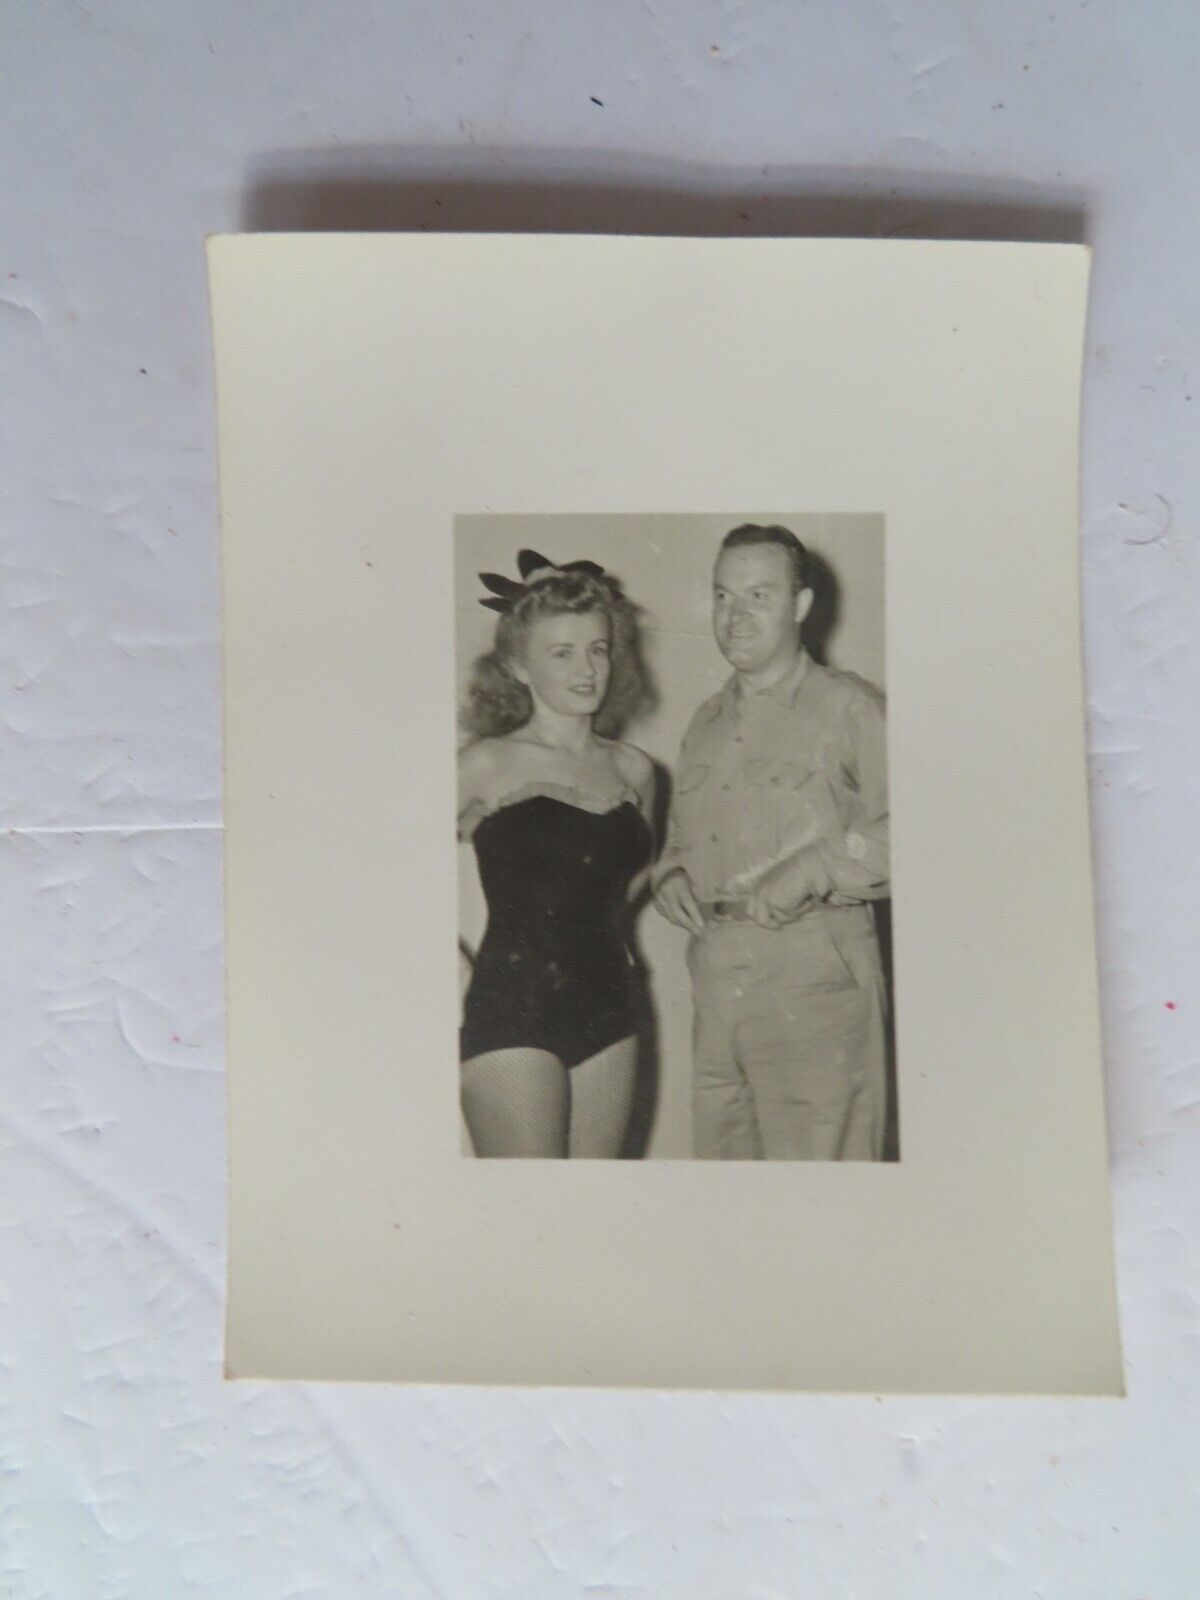 Vintage WWII Era Photo of Bob Hope & Bathing Beauty - Unpublished?